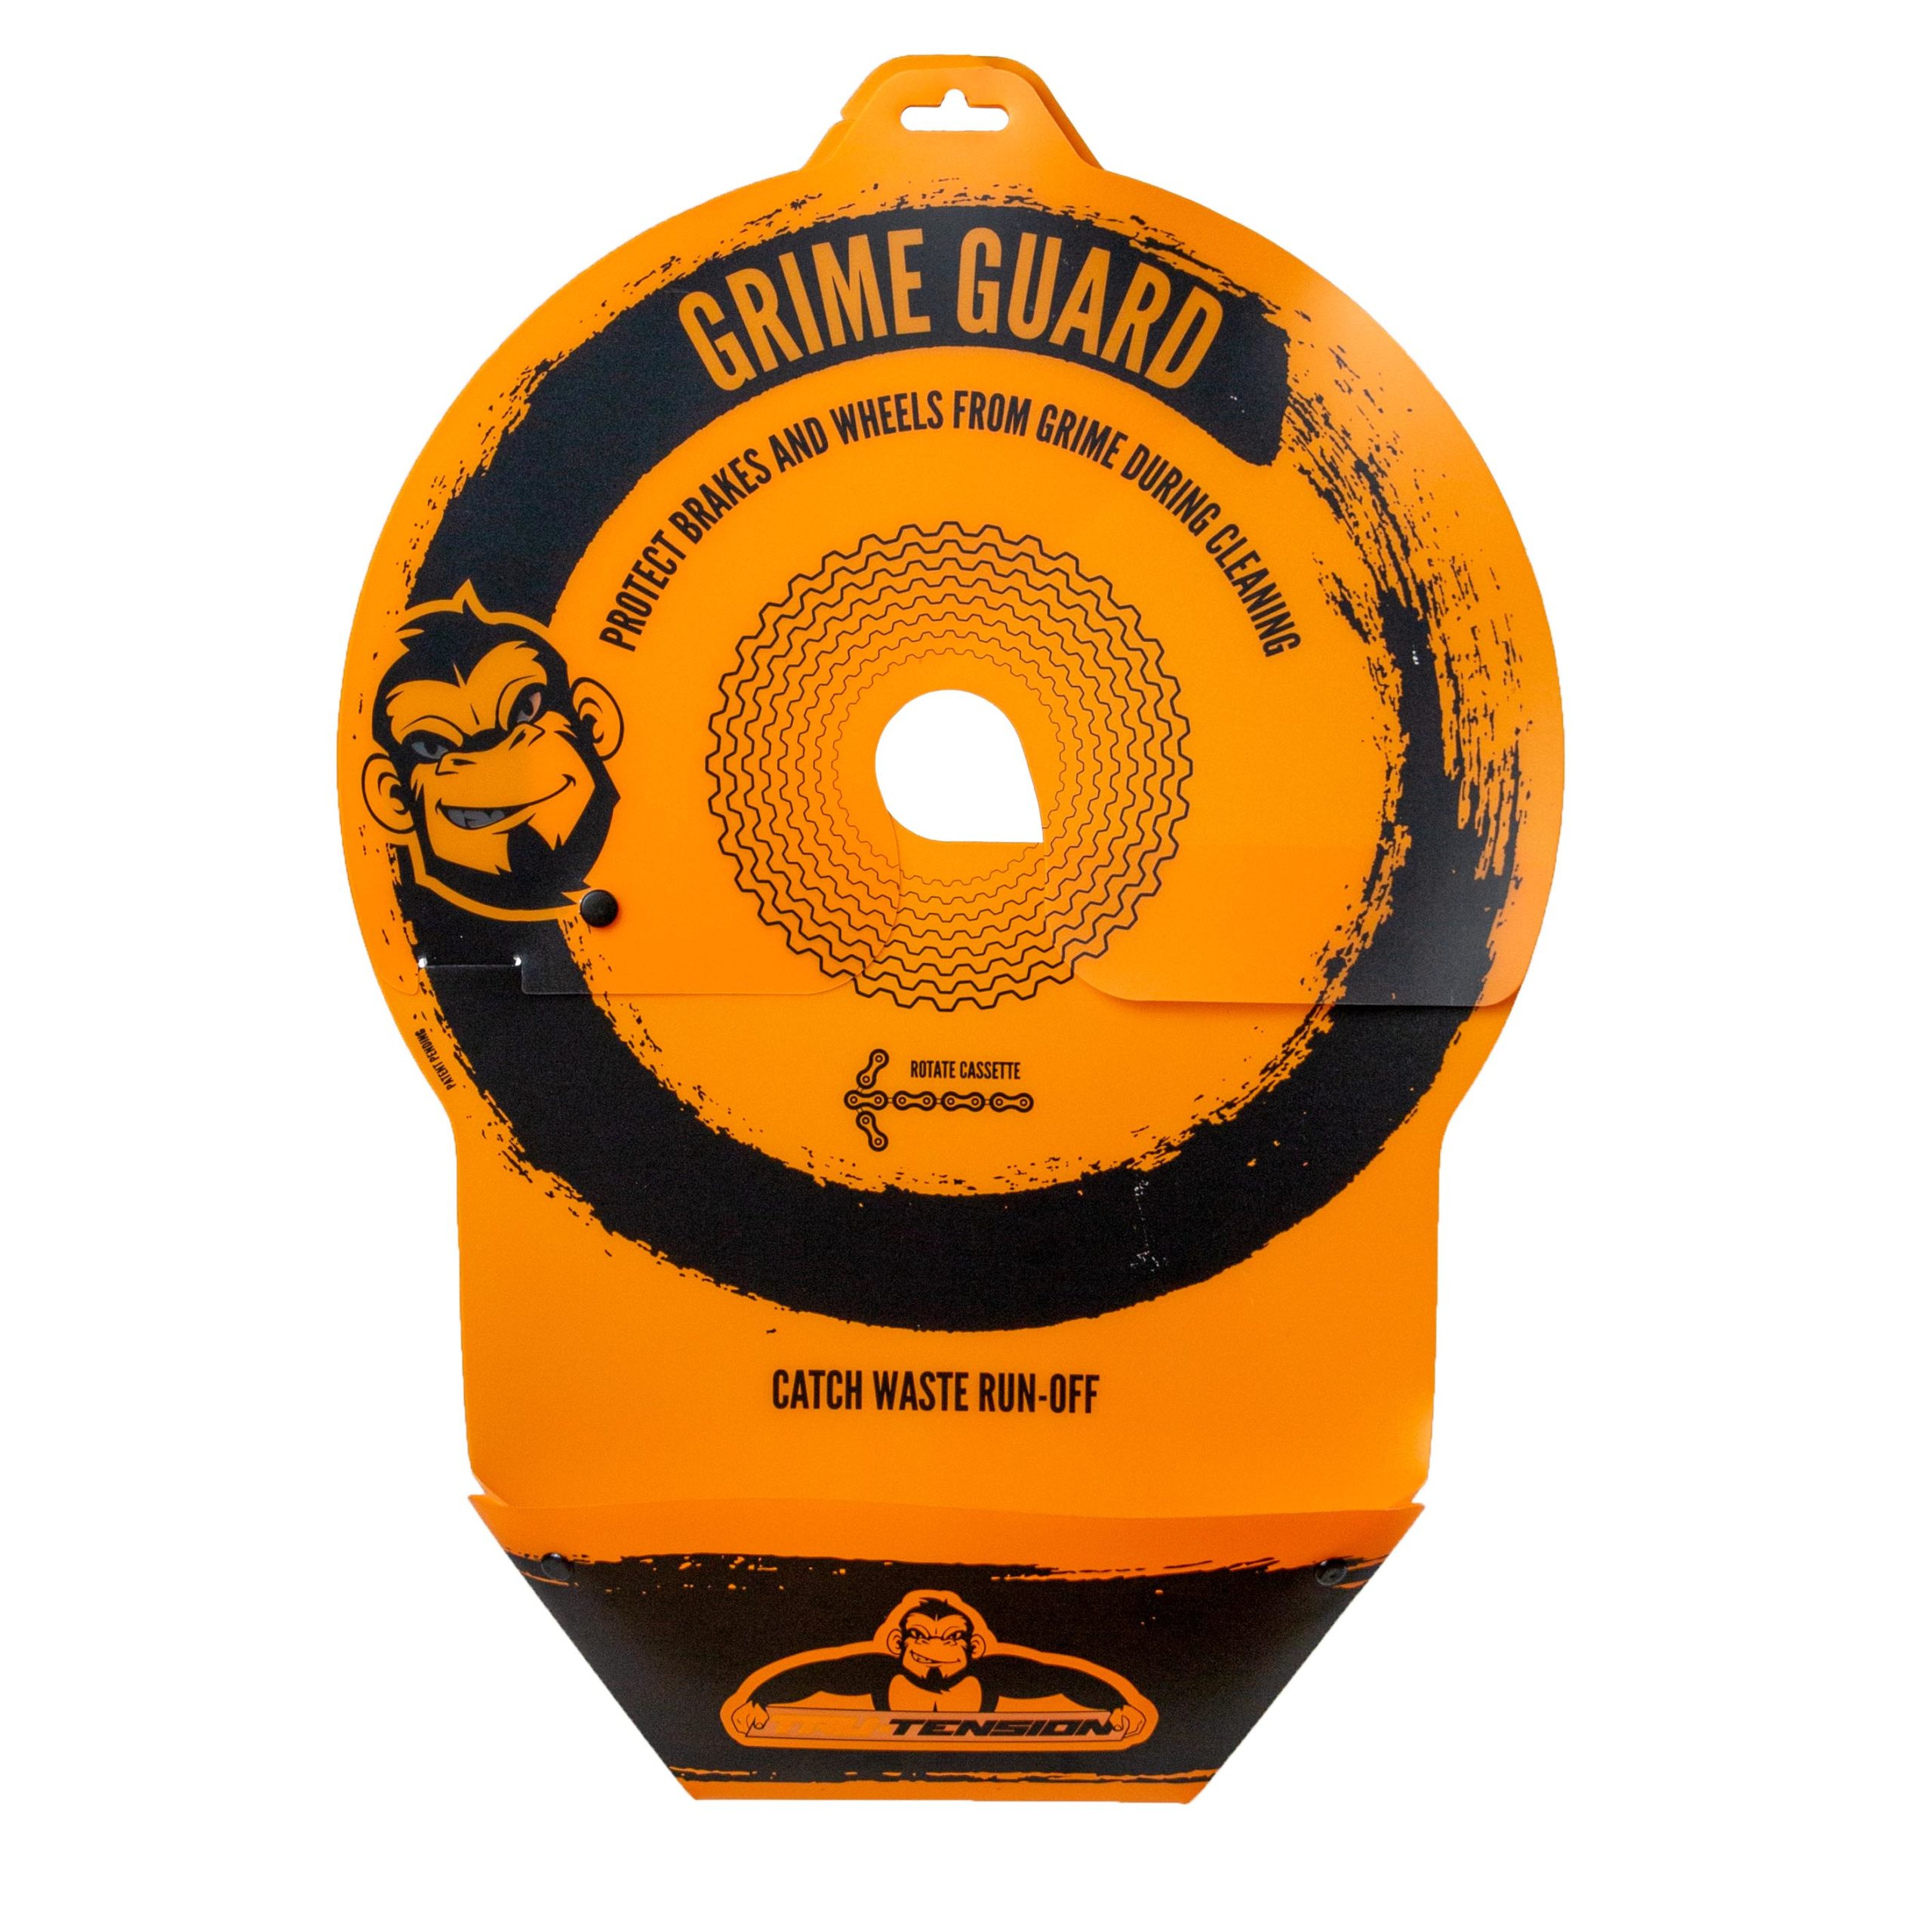 Conjunto Tyre Monkey e Grime Guard – Brasil - Tru-Tension USA